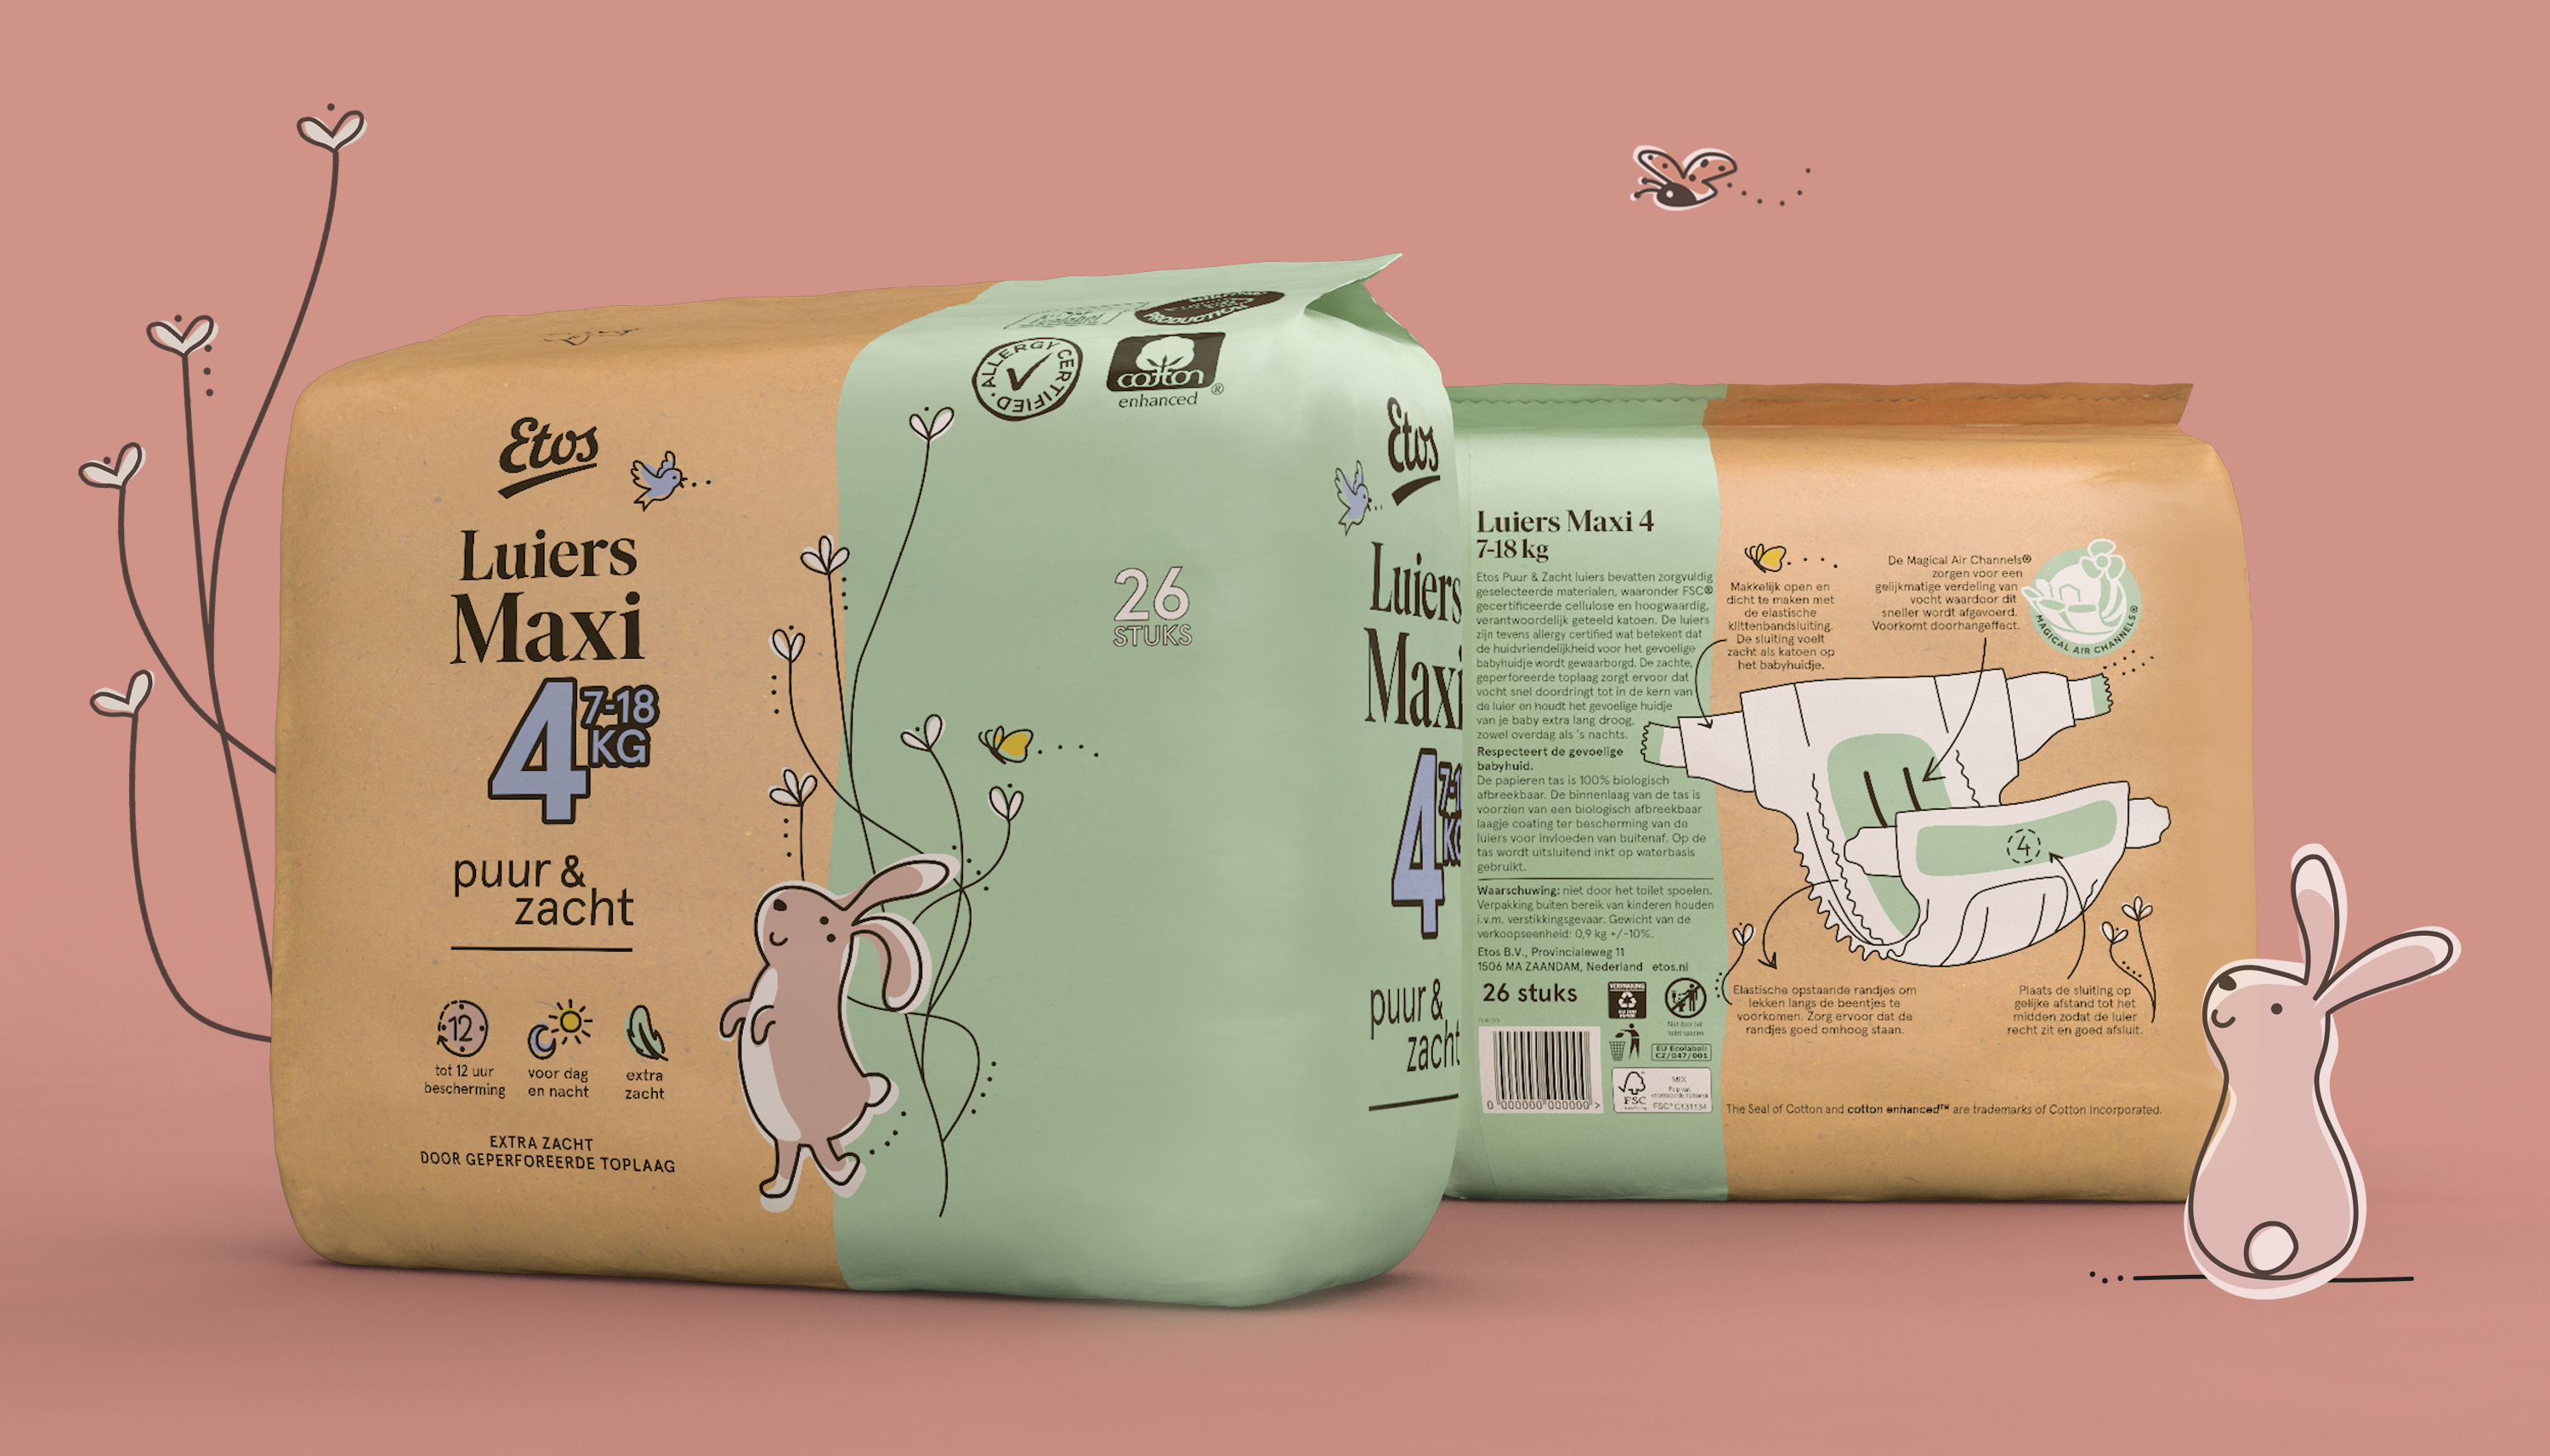 Slordig groep keuken Etos Diapers | Dieline - Design, Branding & Packaging Inspiration